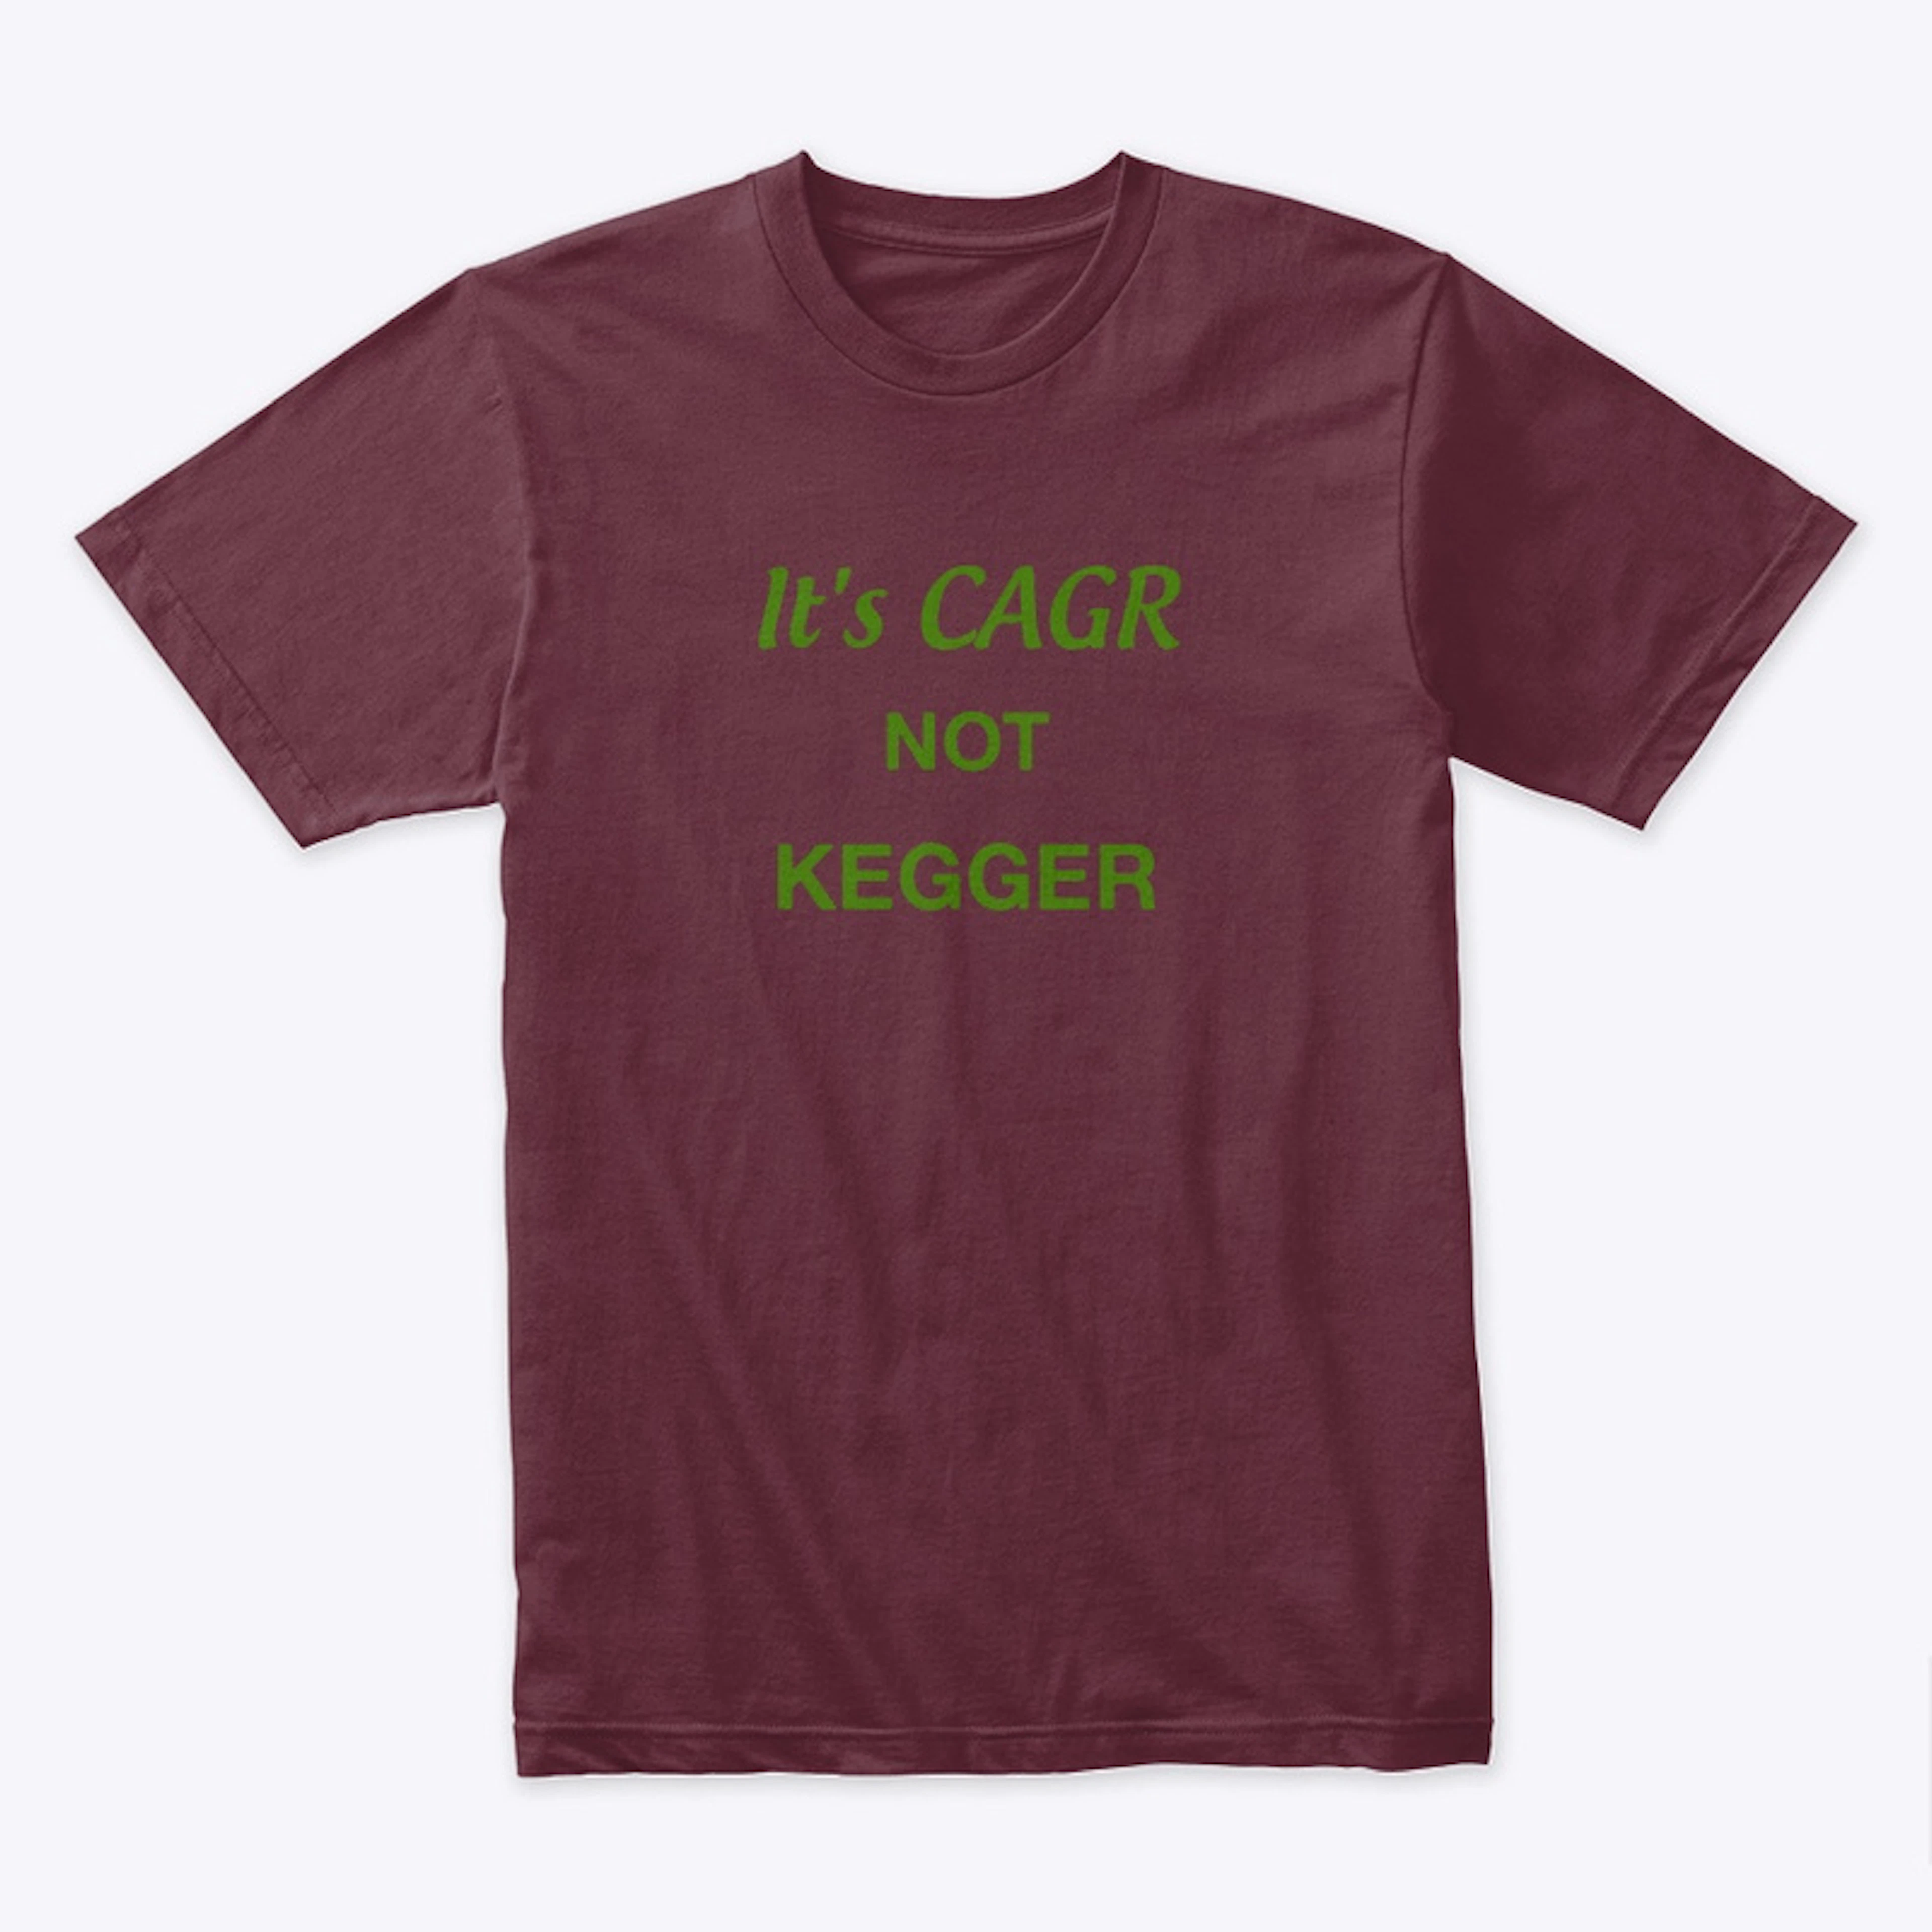 Its CAGR not Kegger